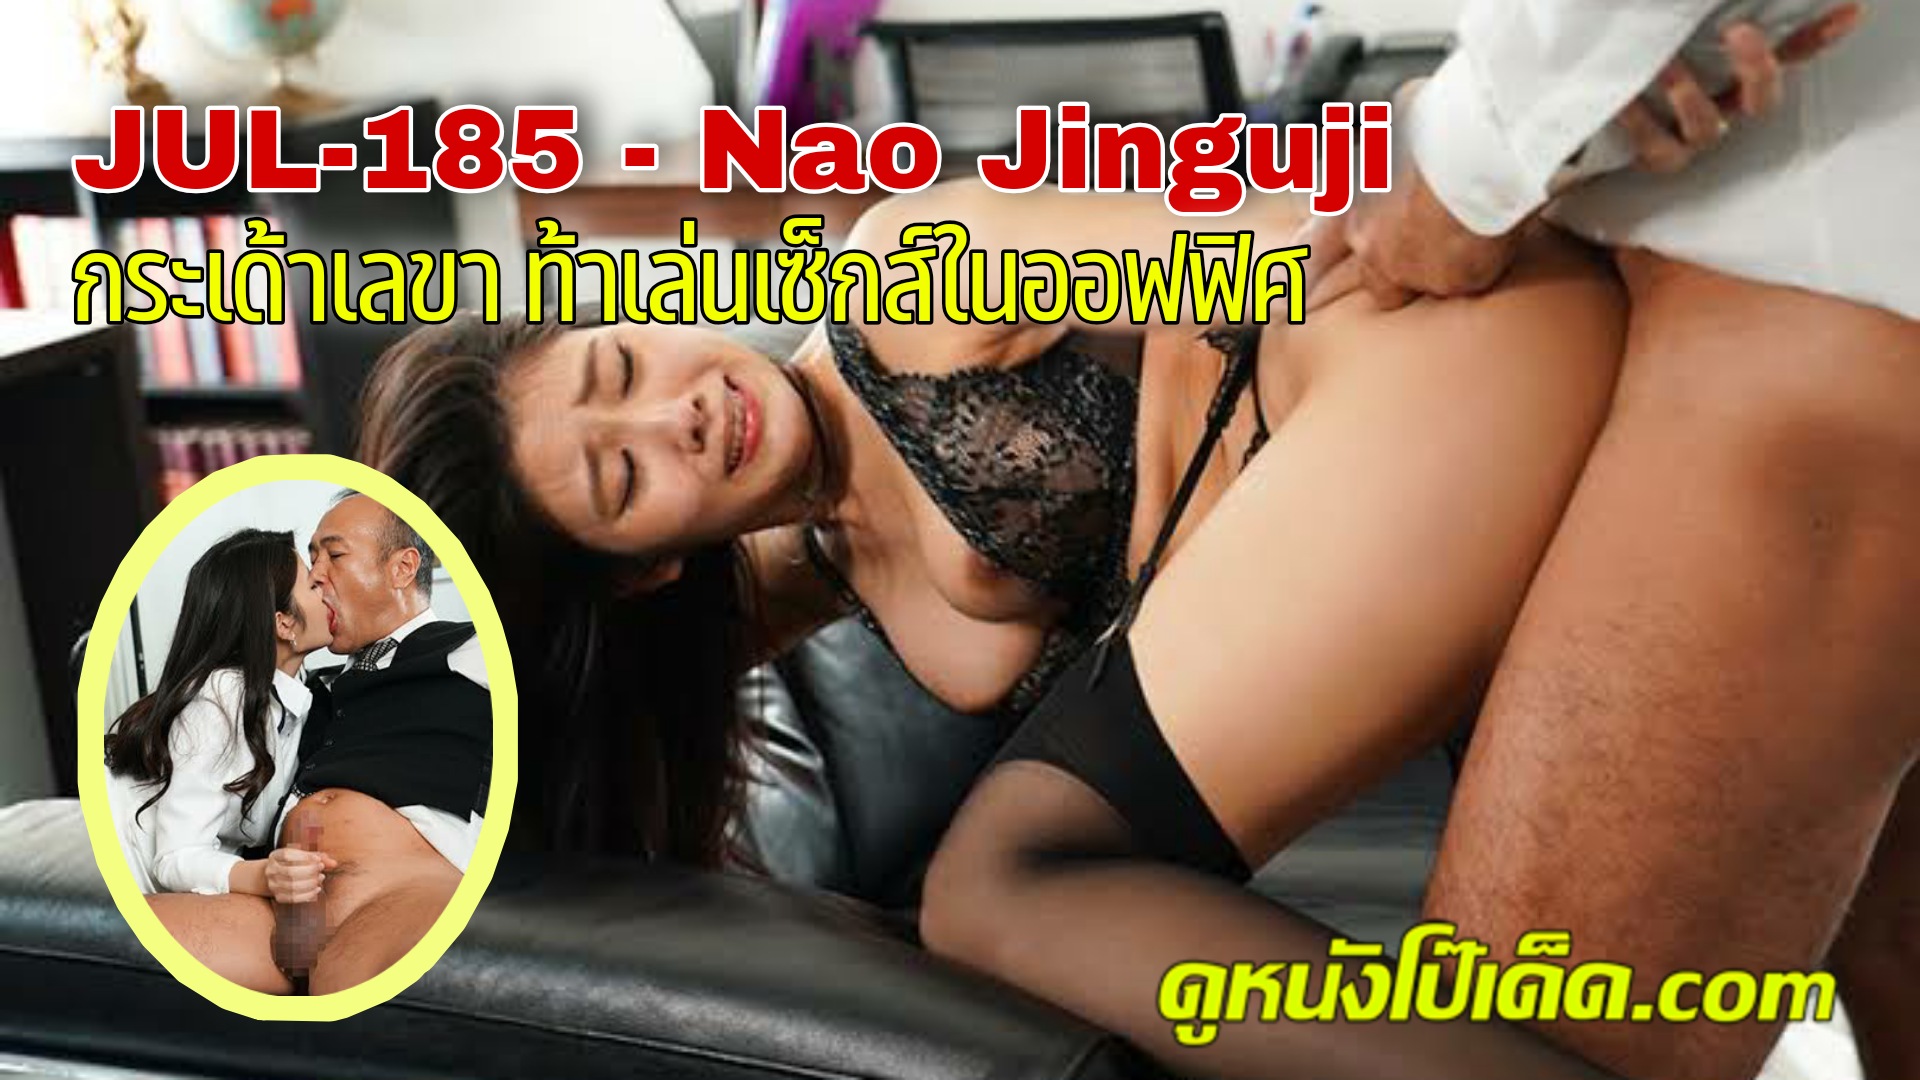 JUL-185 หนังเอวีเล่นชู้ รหัสโป๊ซับไทย จากค่าย Madonna เลขารู้งานบริการเย็ดควย เลขานุการสาวนาโอะ จิงงูจิ ที่บ้านล้มละลาย หัวหน้าเลยยื่นข้อเสนอใช้หนี้ให้ ด้วยการเอาหีเข้าแลก Nao Jinguji ไม่รอช้ารีบรับข้อเสนอ มาปรนบัติจับหัวหน้าอมควยบำเรากาม แล้วแหกหีพลีกายให้เย็ดแตกในลับหลังสามี